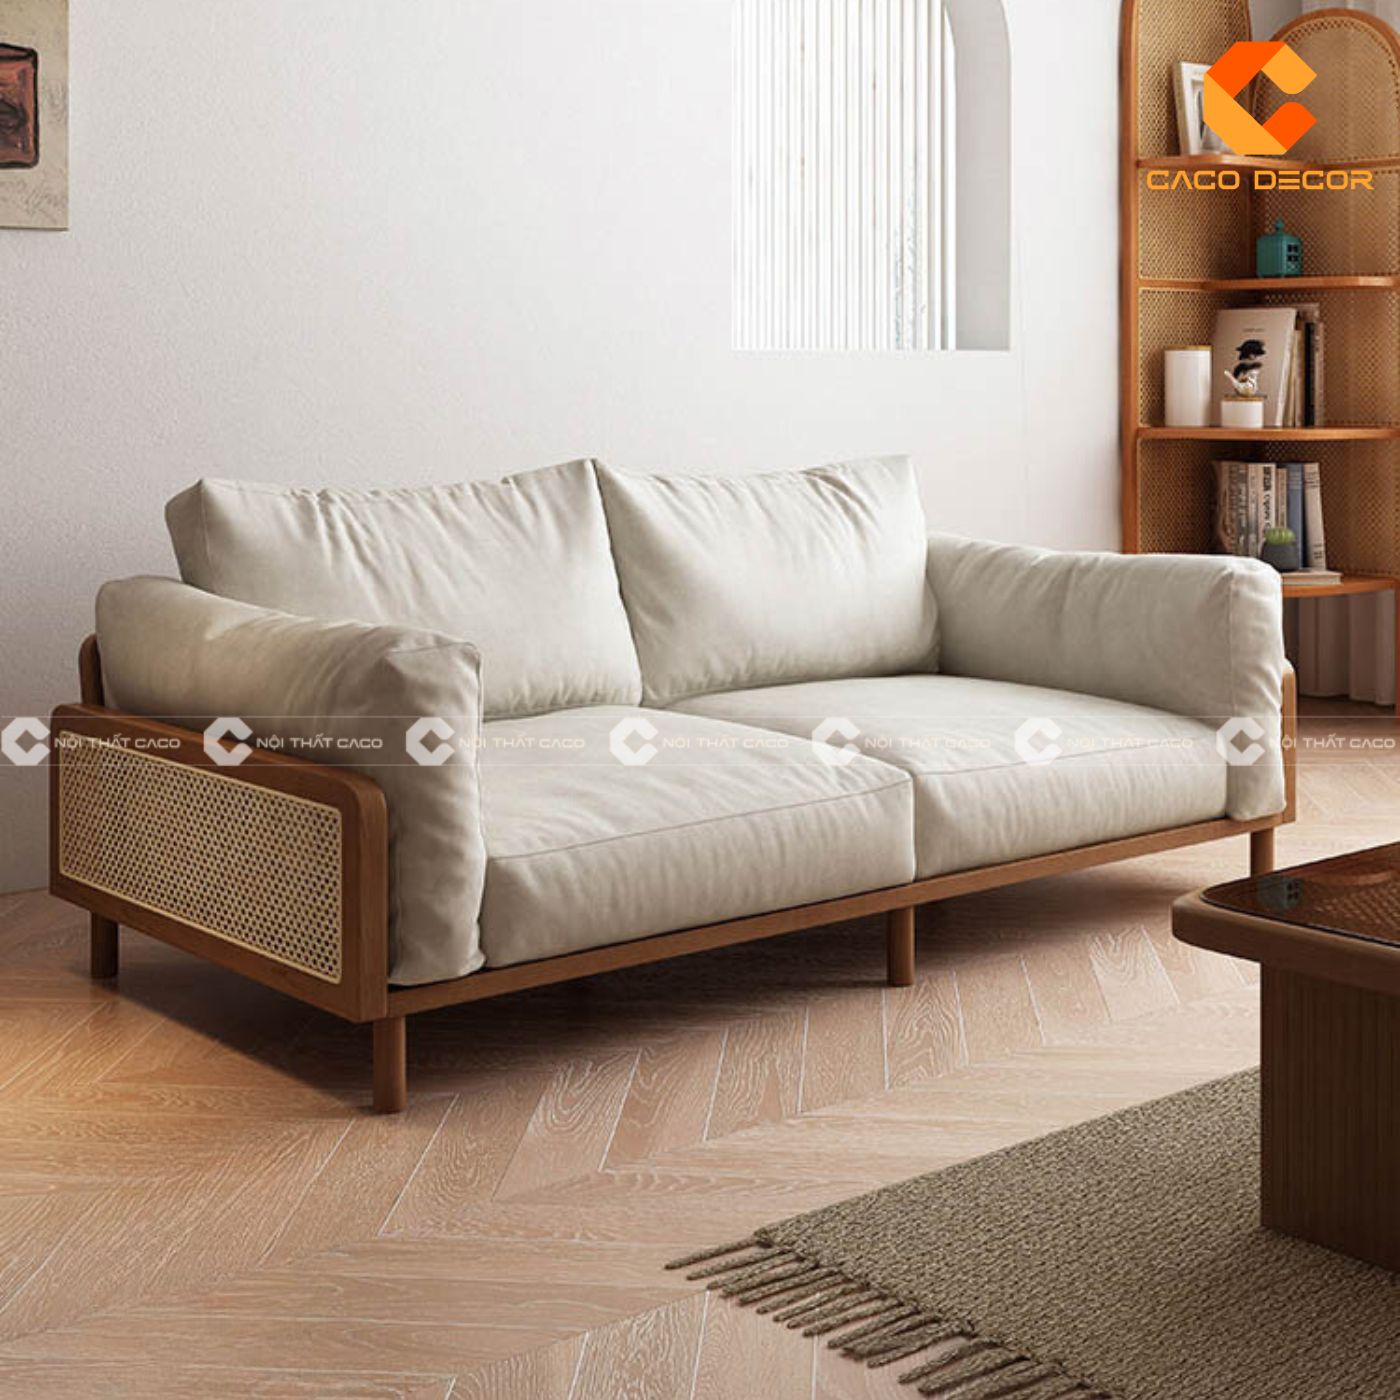 Sofa gỗ hiện đại lựa chọn hoàn hảo cho phòng khách chung cư 4